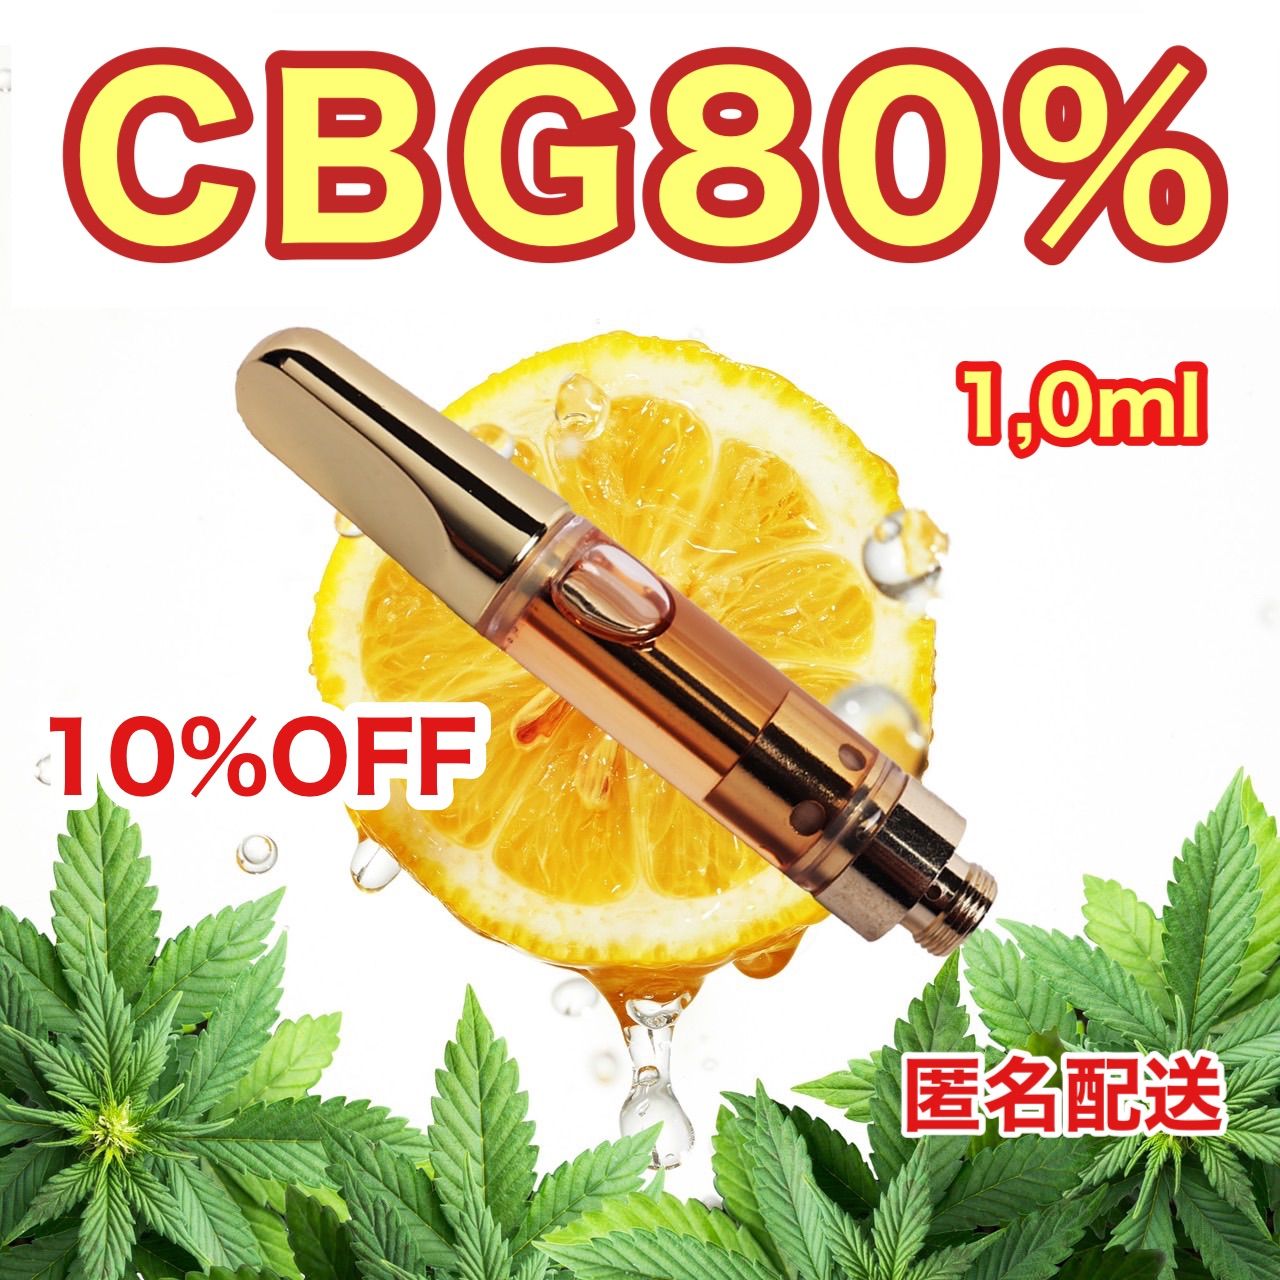 高濃度 CBG 80%リキッド1,0ml 510規格 - メルカリ